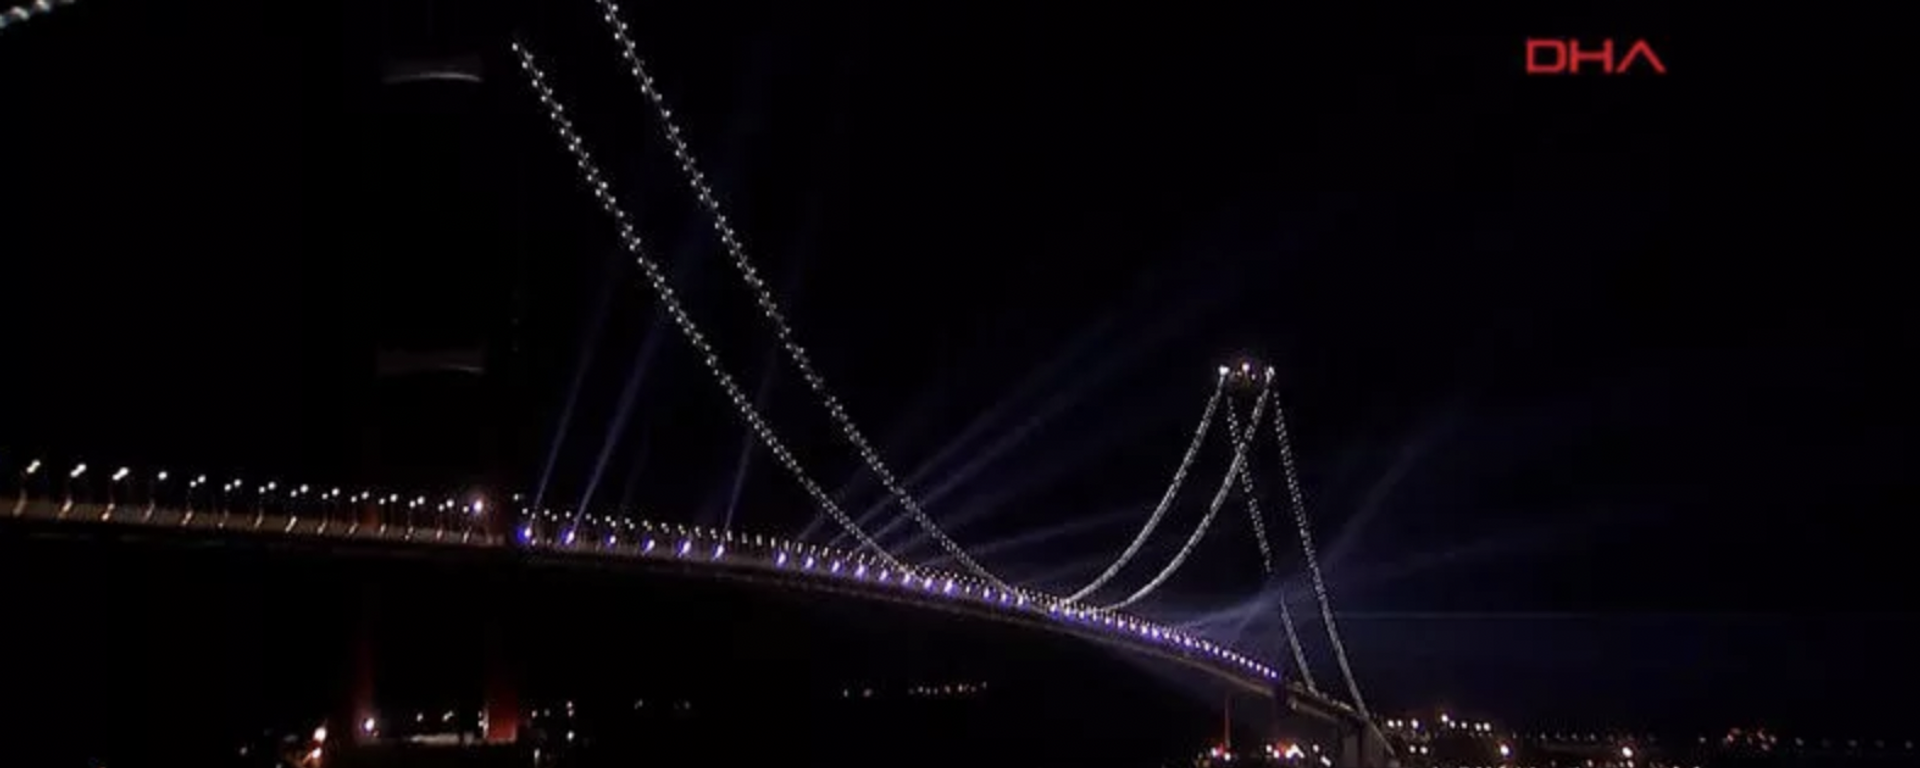 Cumhurbaşkanı Recep Tayyip Erdoğan tarafından açılışı gerçekleştirilen 1915 Çanakkale Köprüsü’nde, havanın kararmasıyla birlikte lazer ışık gösterisi yapıldı.  - Sputnik Türkiye, 1920, 19.03.2022